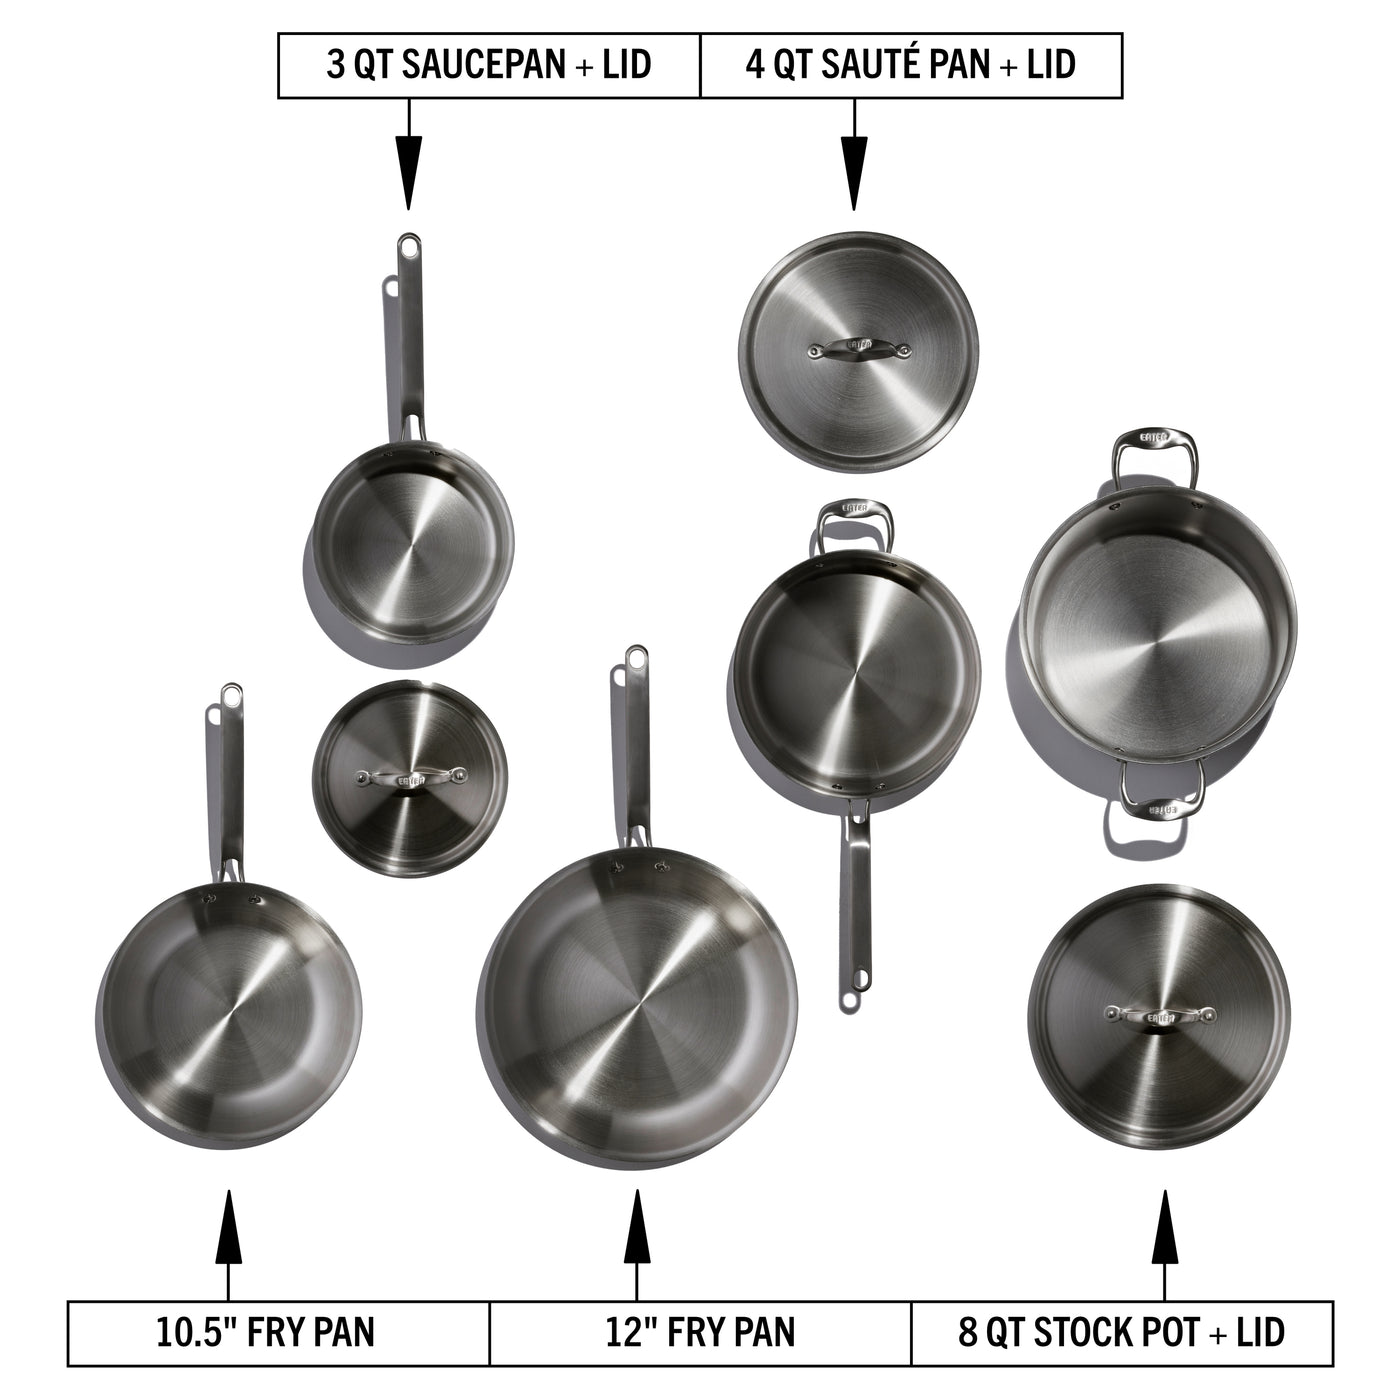 Aluminum Alloy Non-Stick Cookware Set, Pots and Pans - 8-Piece Set 